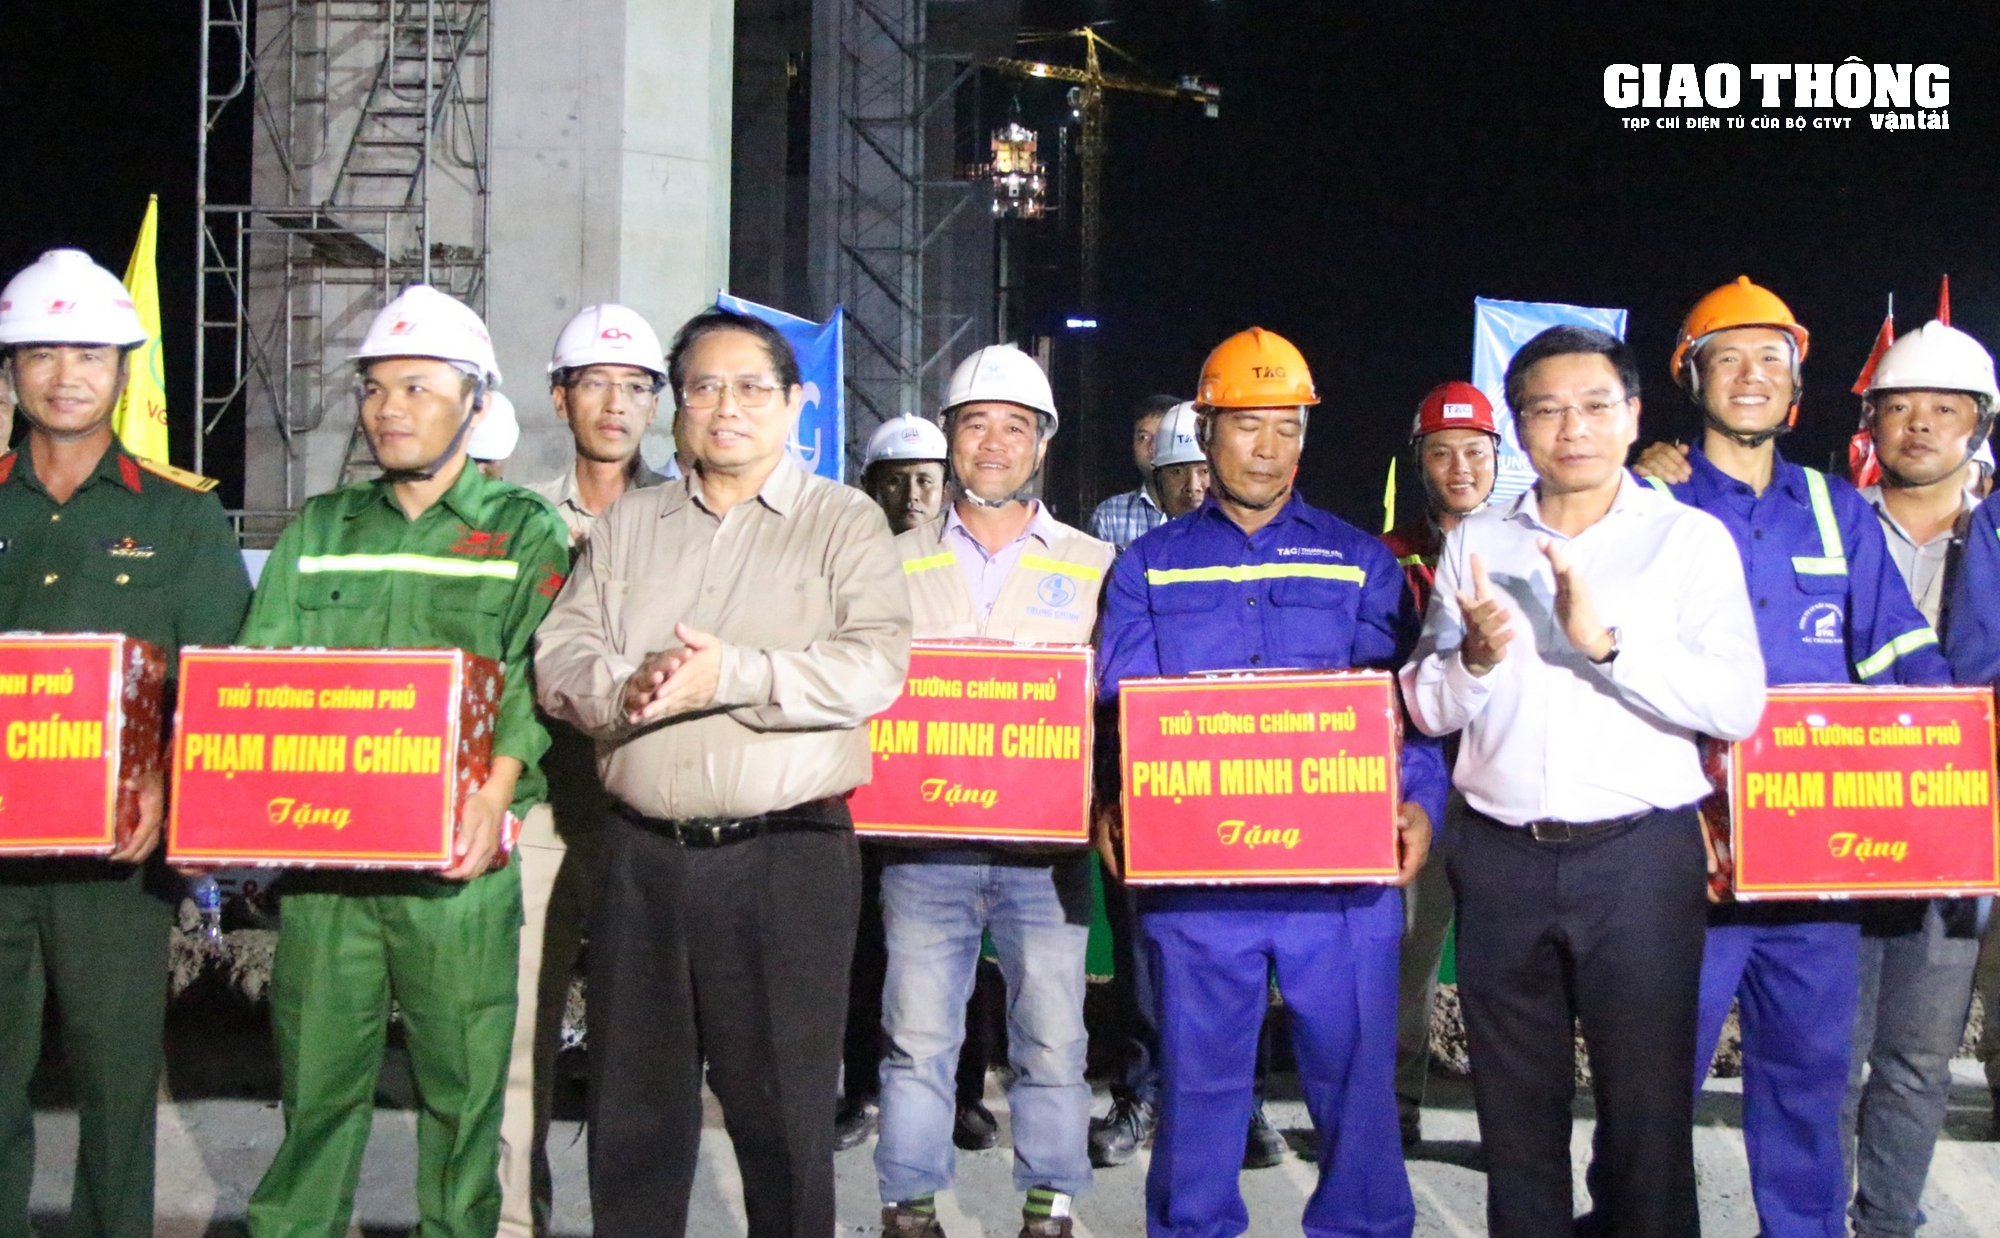 Thủ tướng Chính phủ kiểm tra dự án cầu Rạch Miễu 2 trong đêm- Ảnh 6.